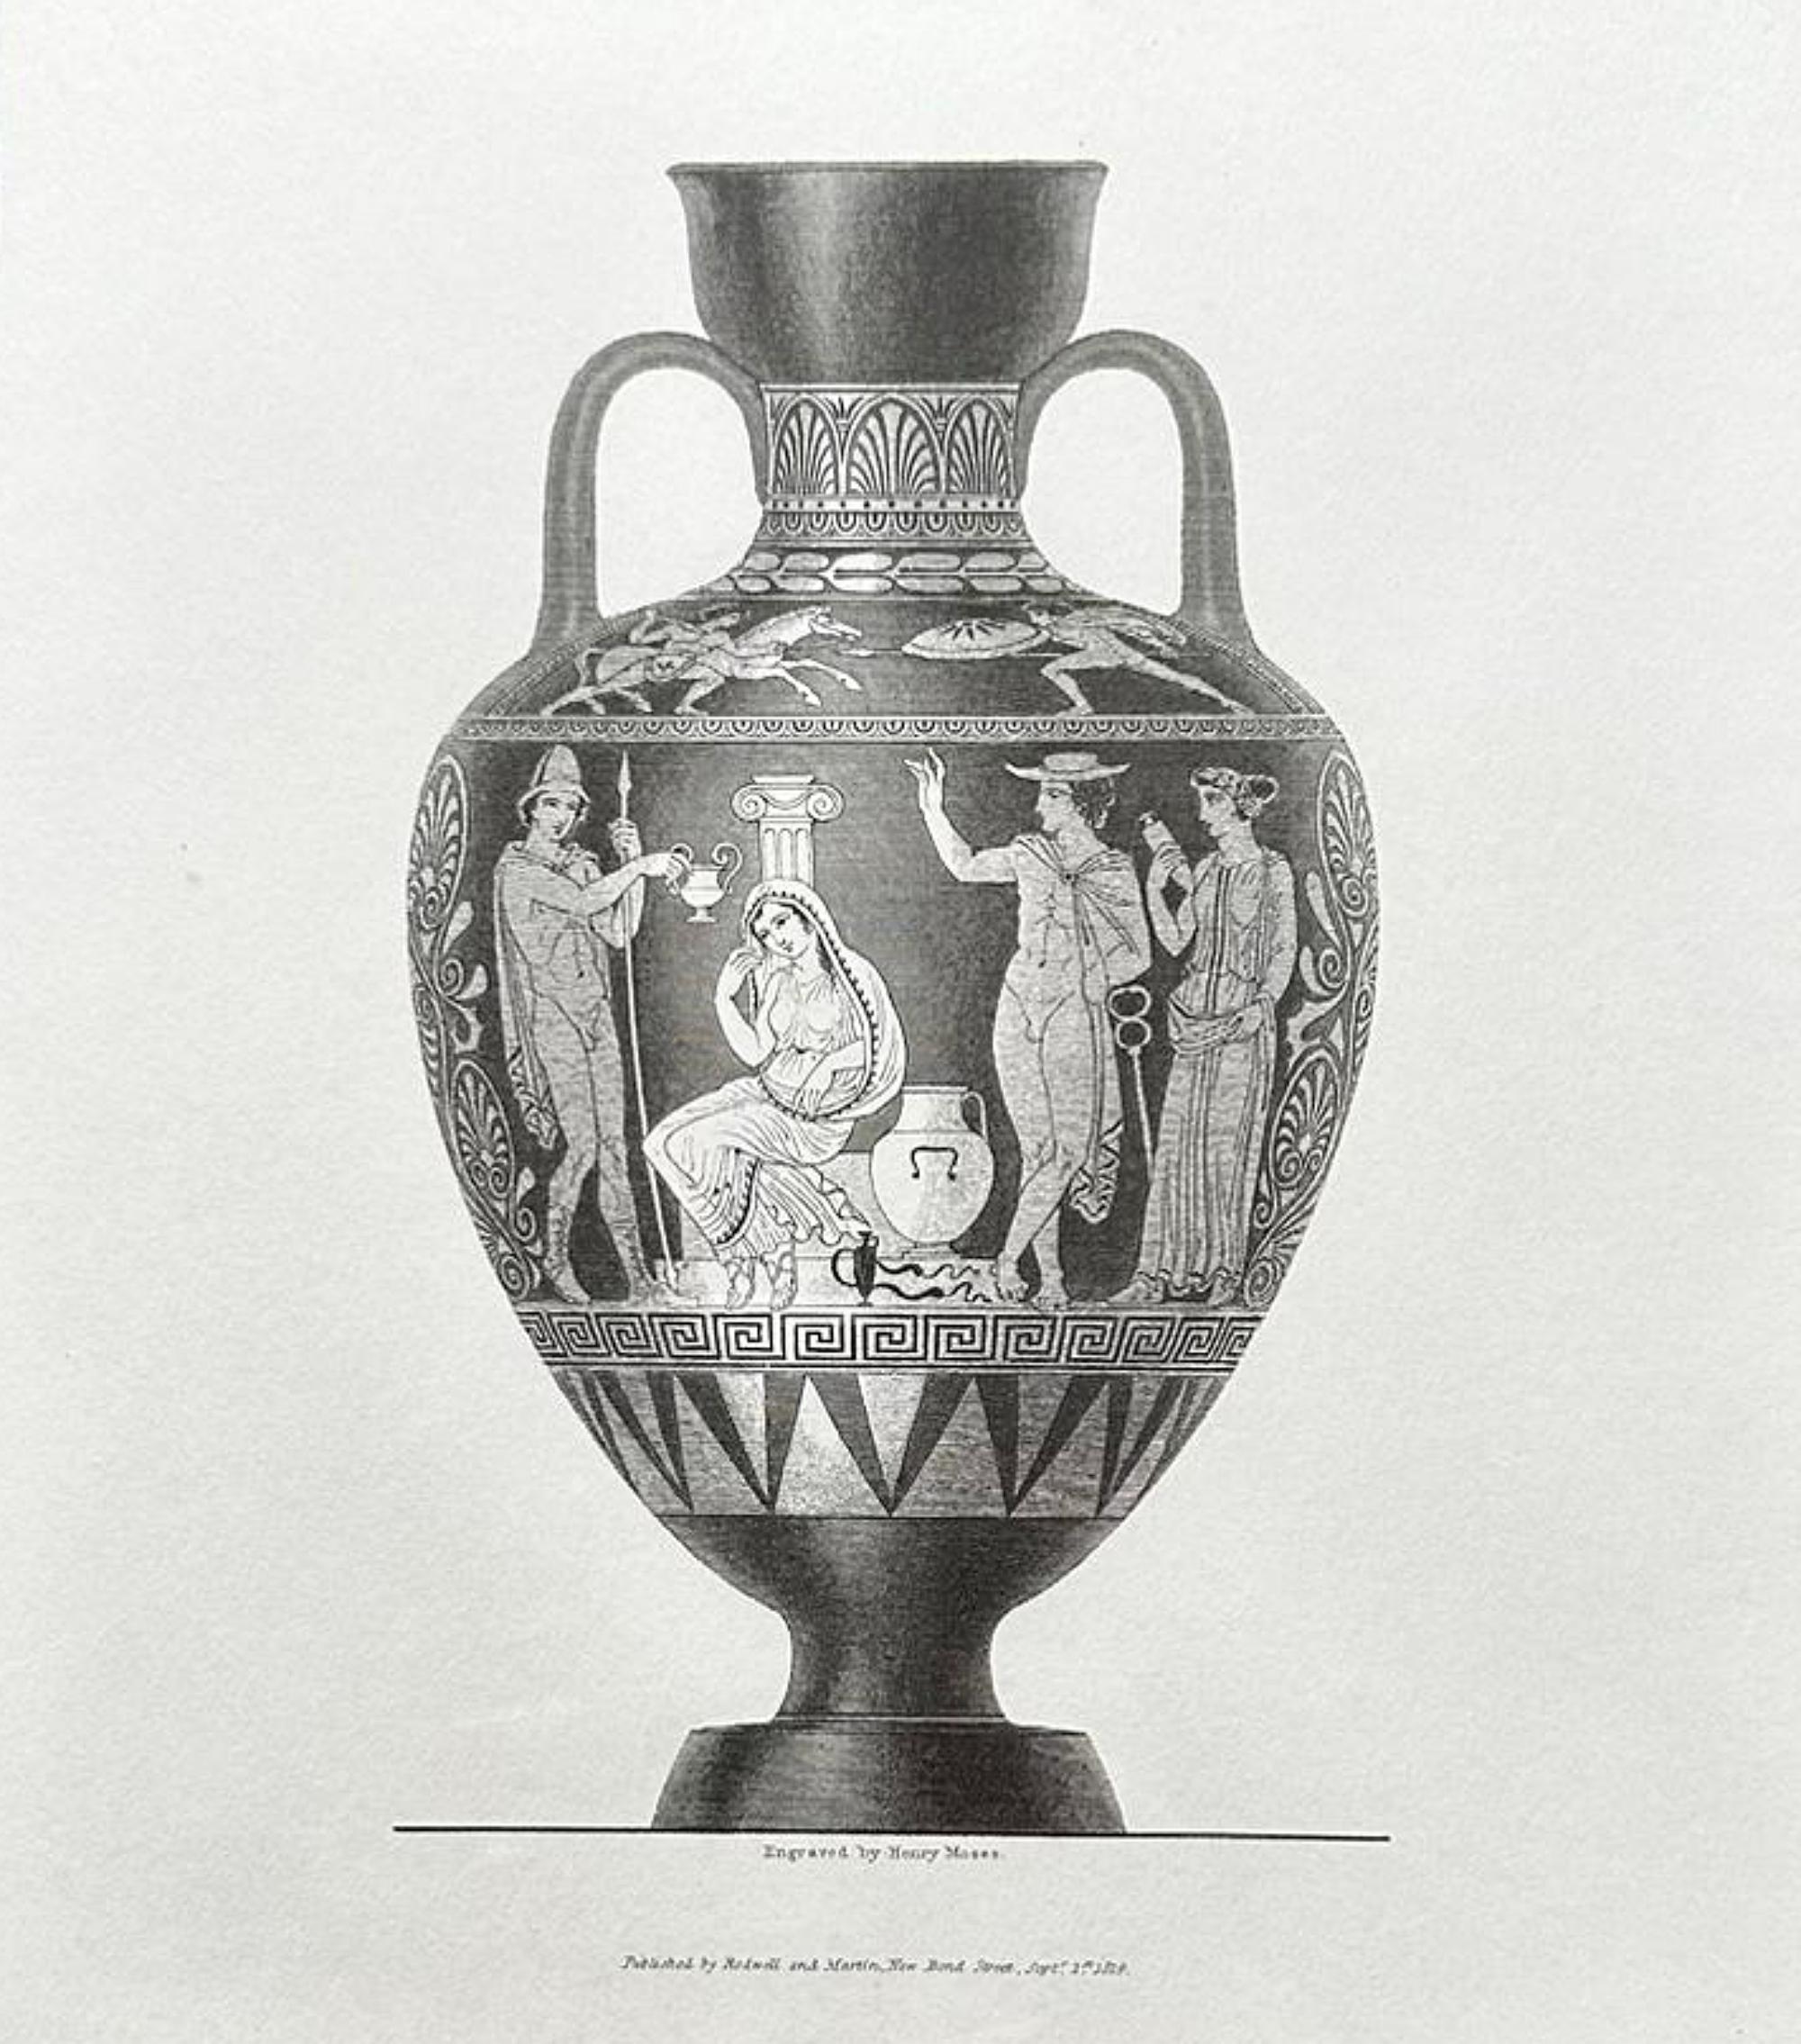 Satz von 4 Gemälden (Gravuren) von griechischen Vasen des 20.
39cm x 36cm
perfekter Zustand, neu